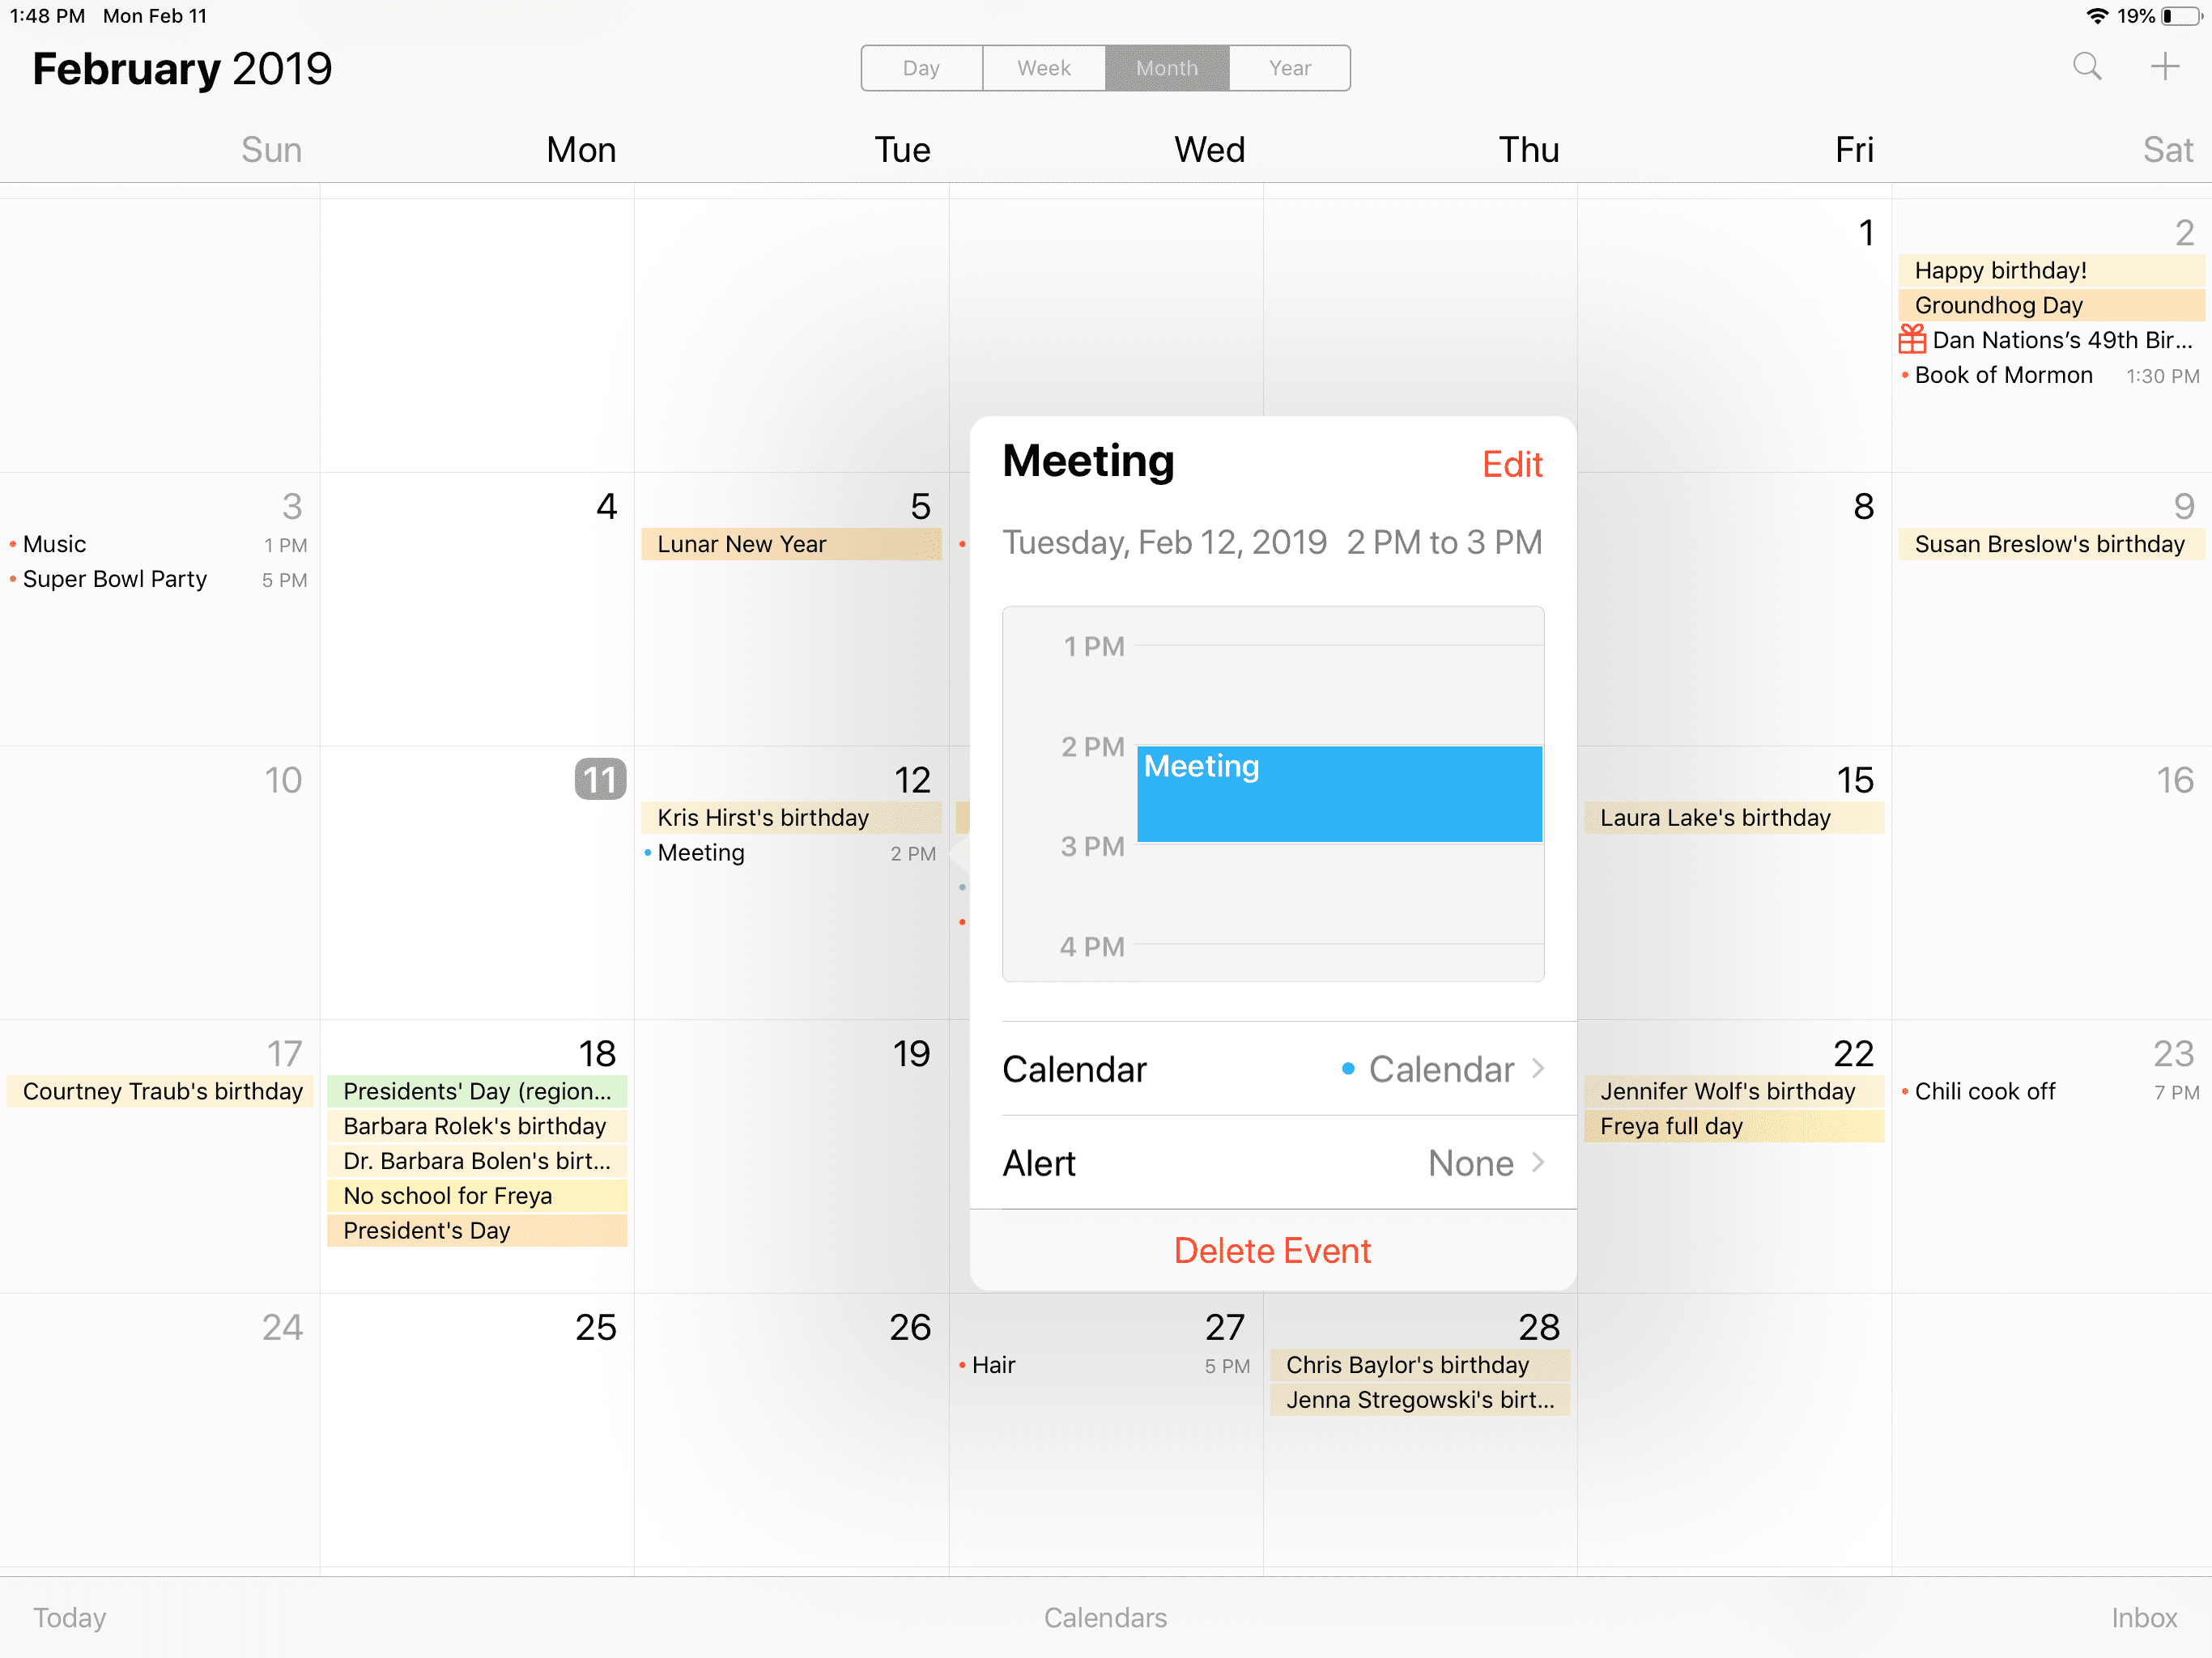 Снимок экрана с календарем iPad во время редактирования события